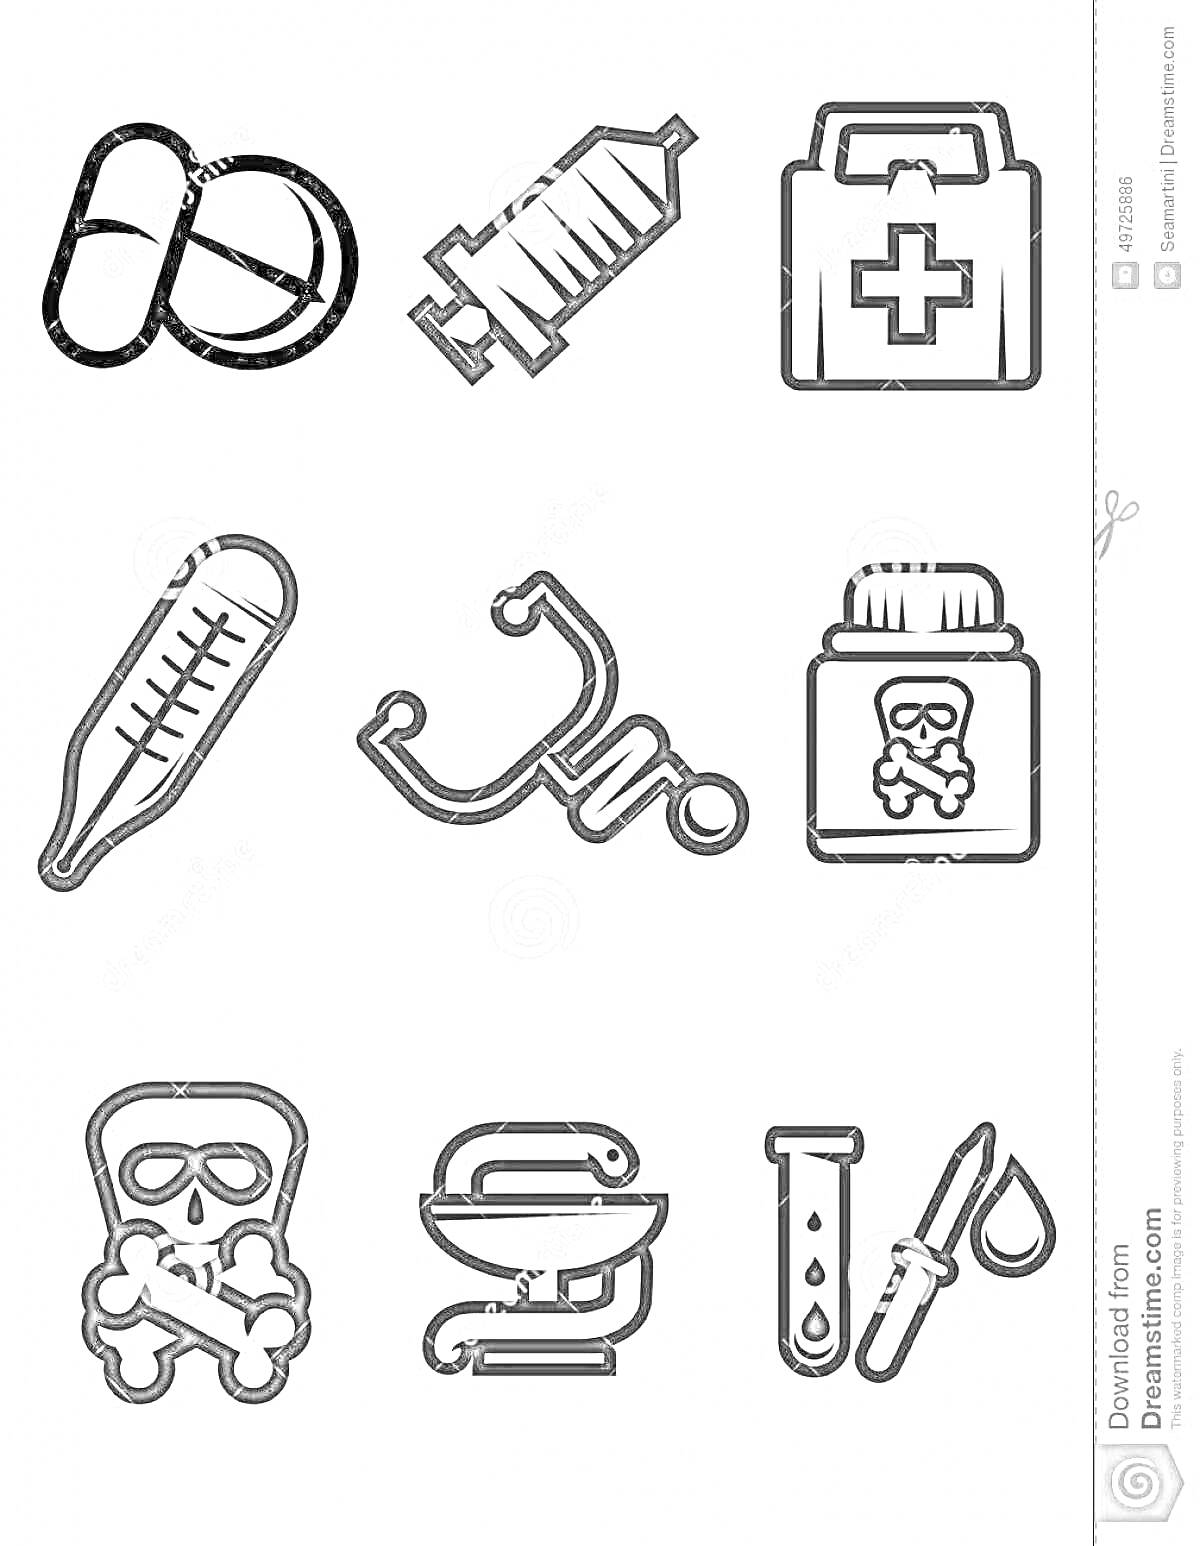 Раскраска Раскраска с медицинскими инструментами для детей - таблетки, шприц, медицинская аптечка, термометр, стетоскоп, банка с ядом, знак опасности, чаша Гигеи, пробирка с пипеткой